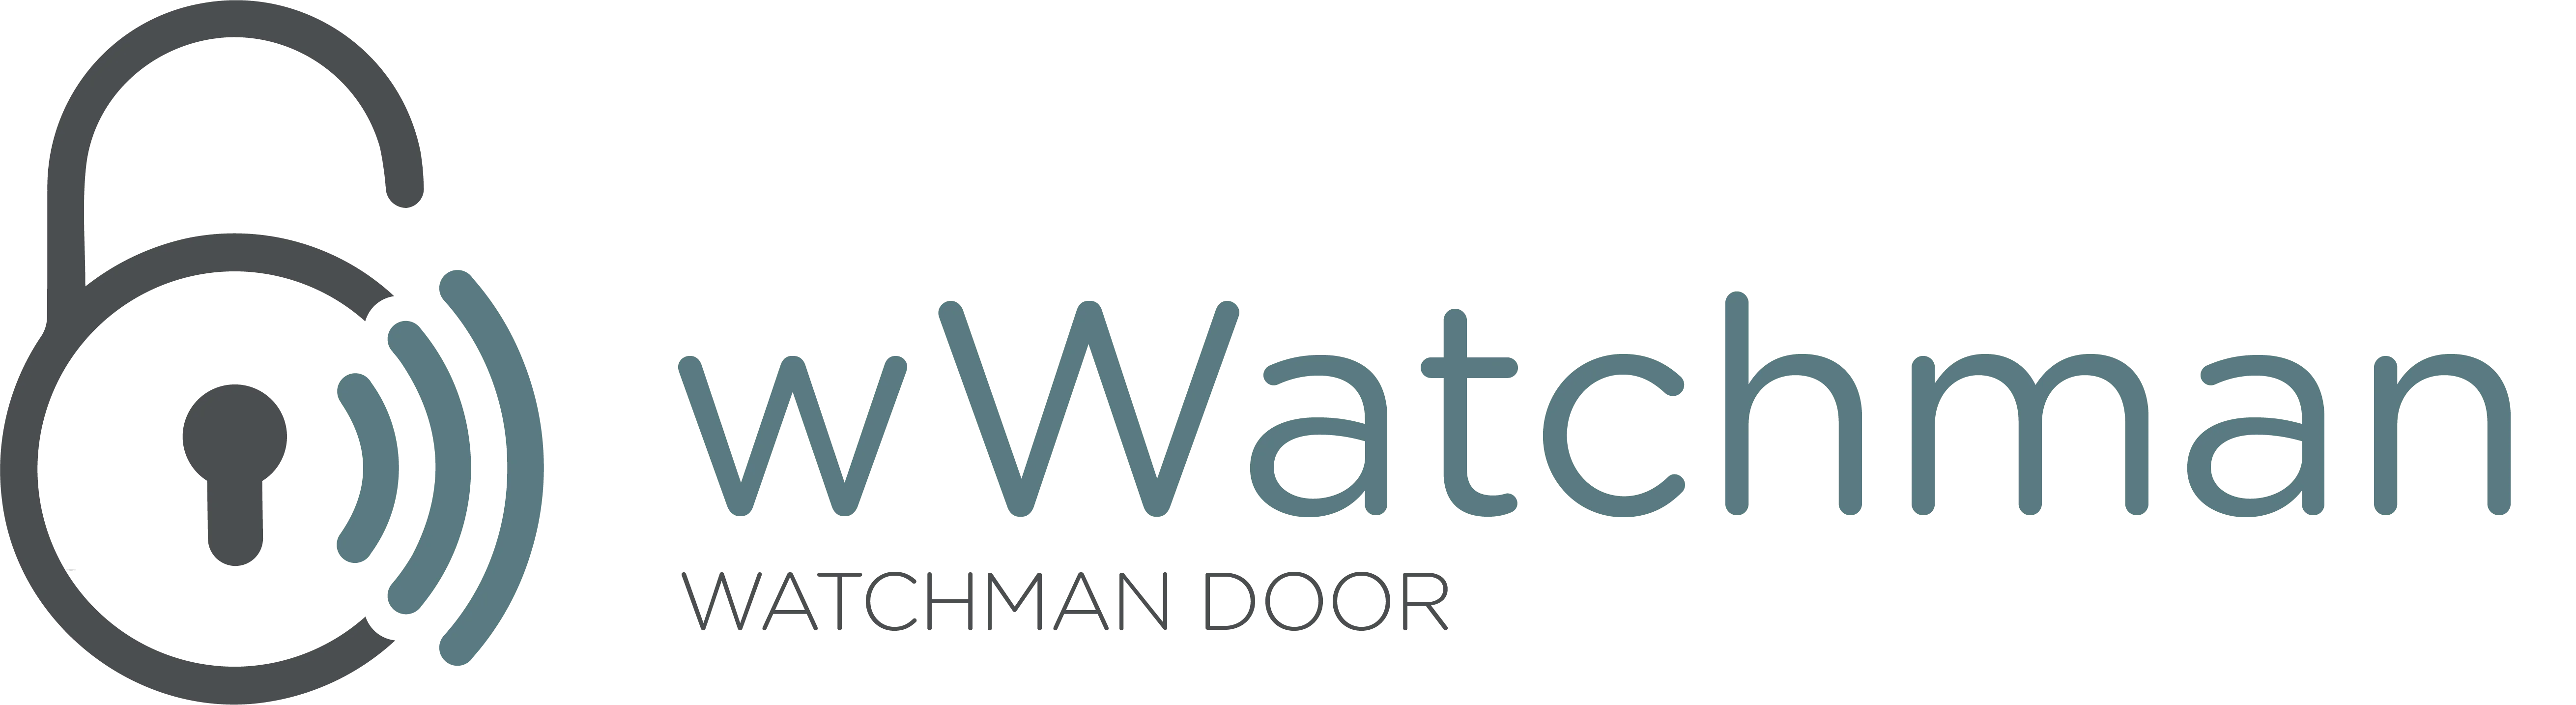 Watchman Door